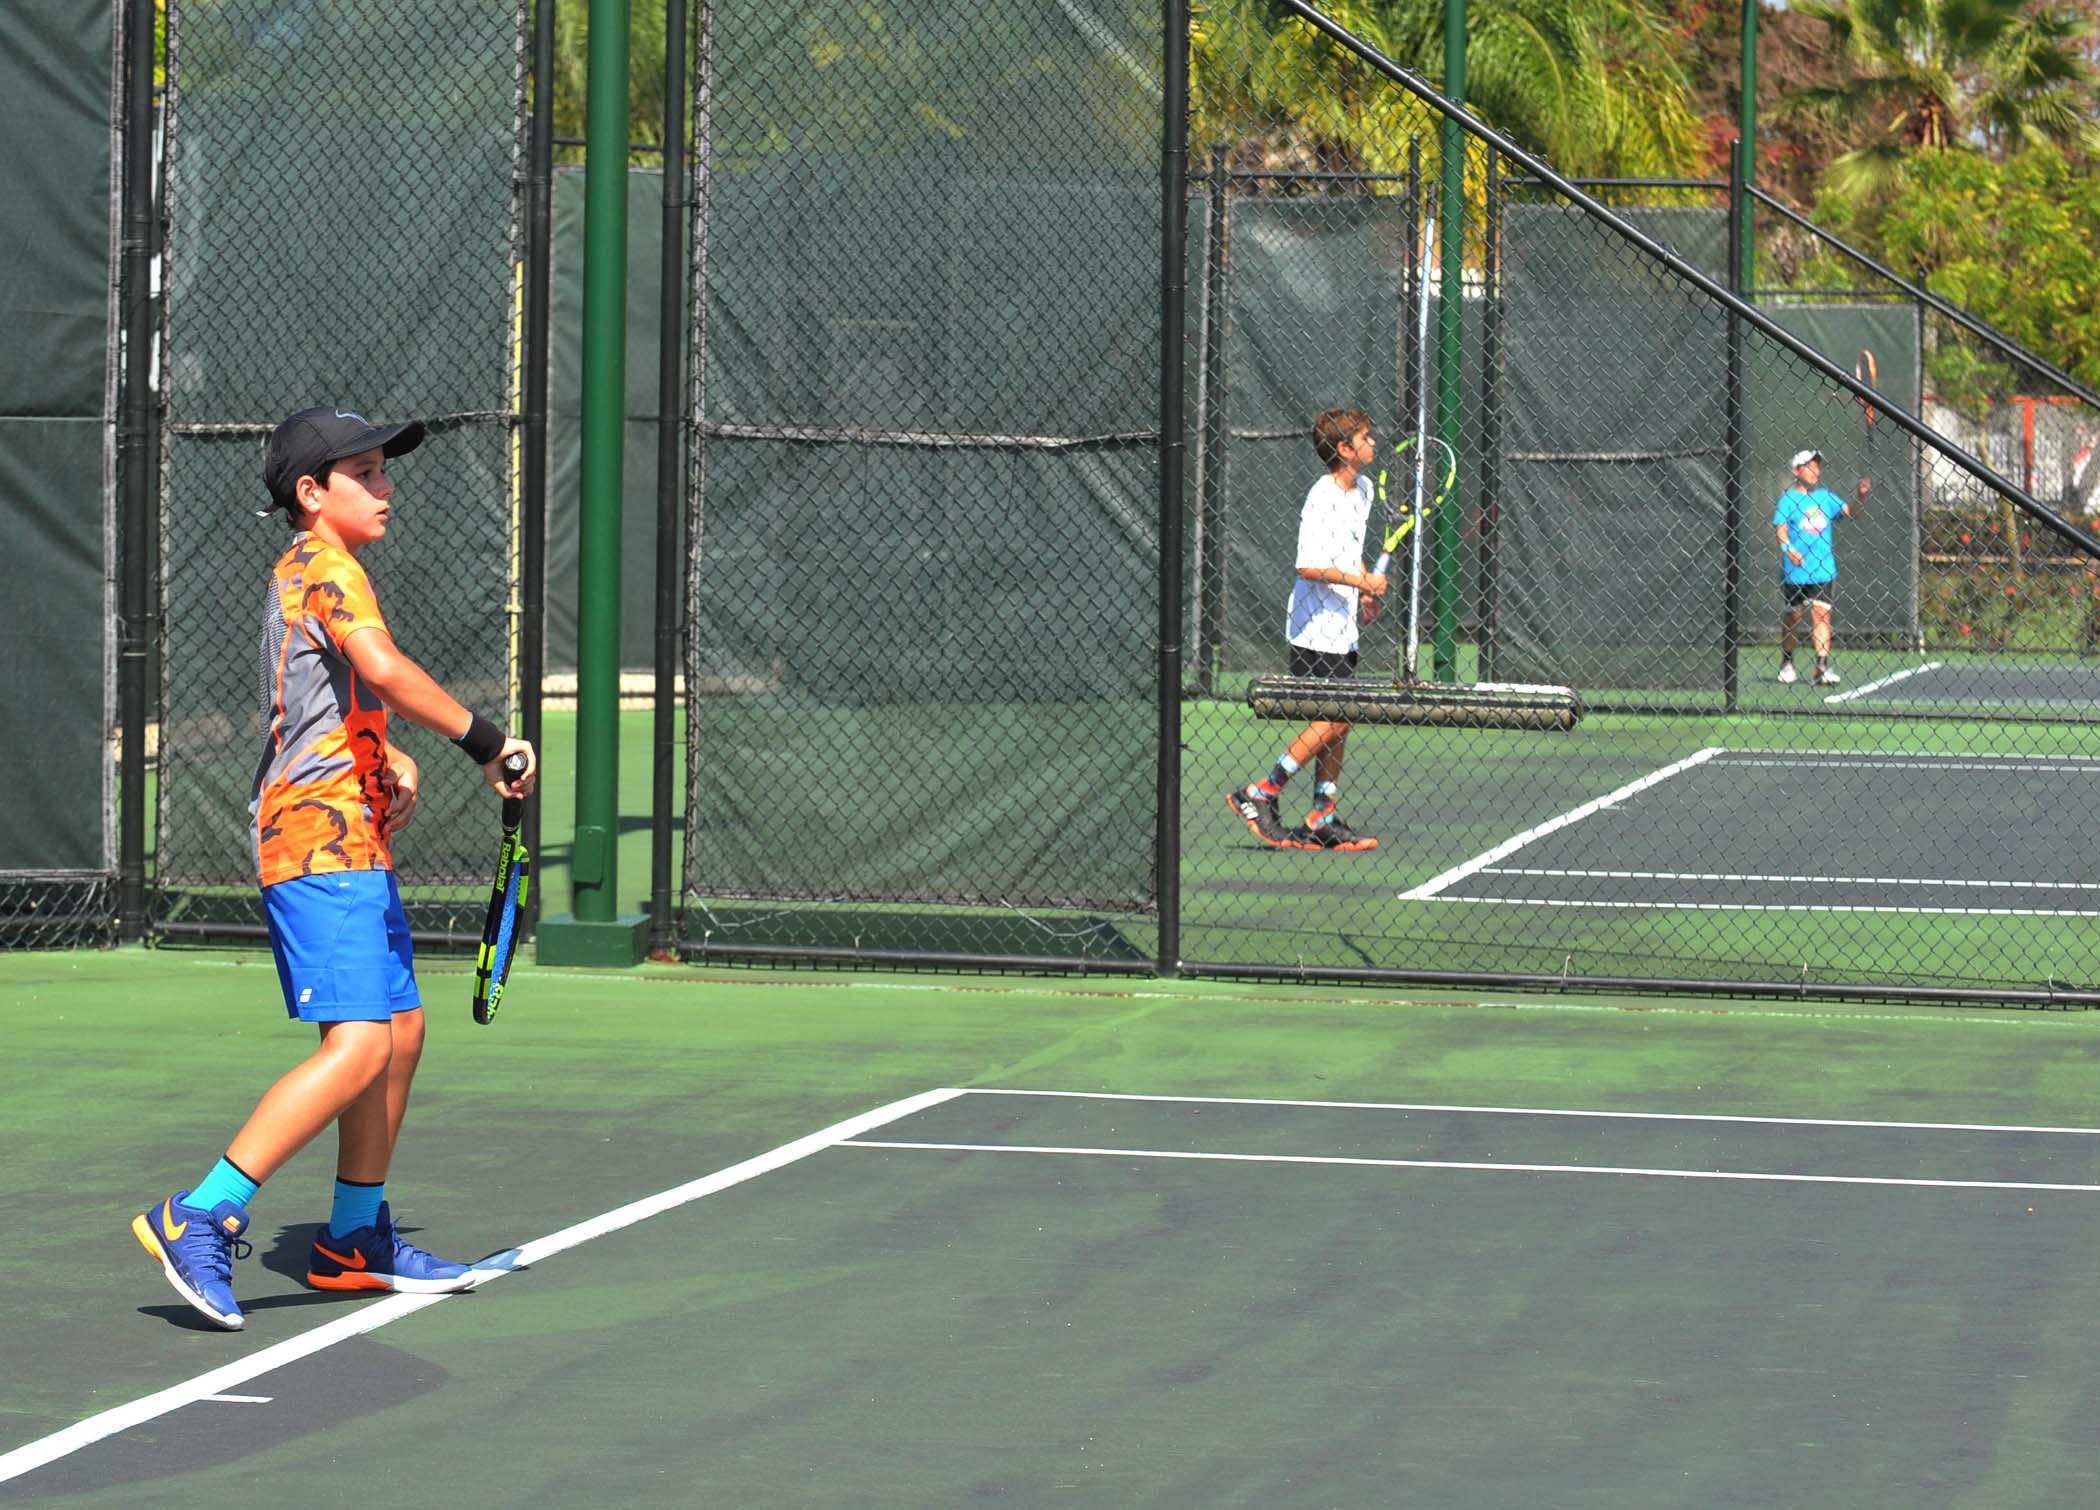 Participante en acción en el Junior Open de Tenis #2